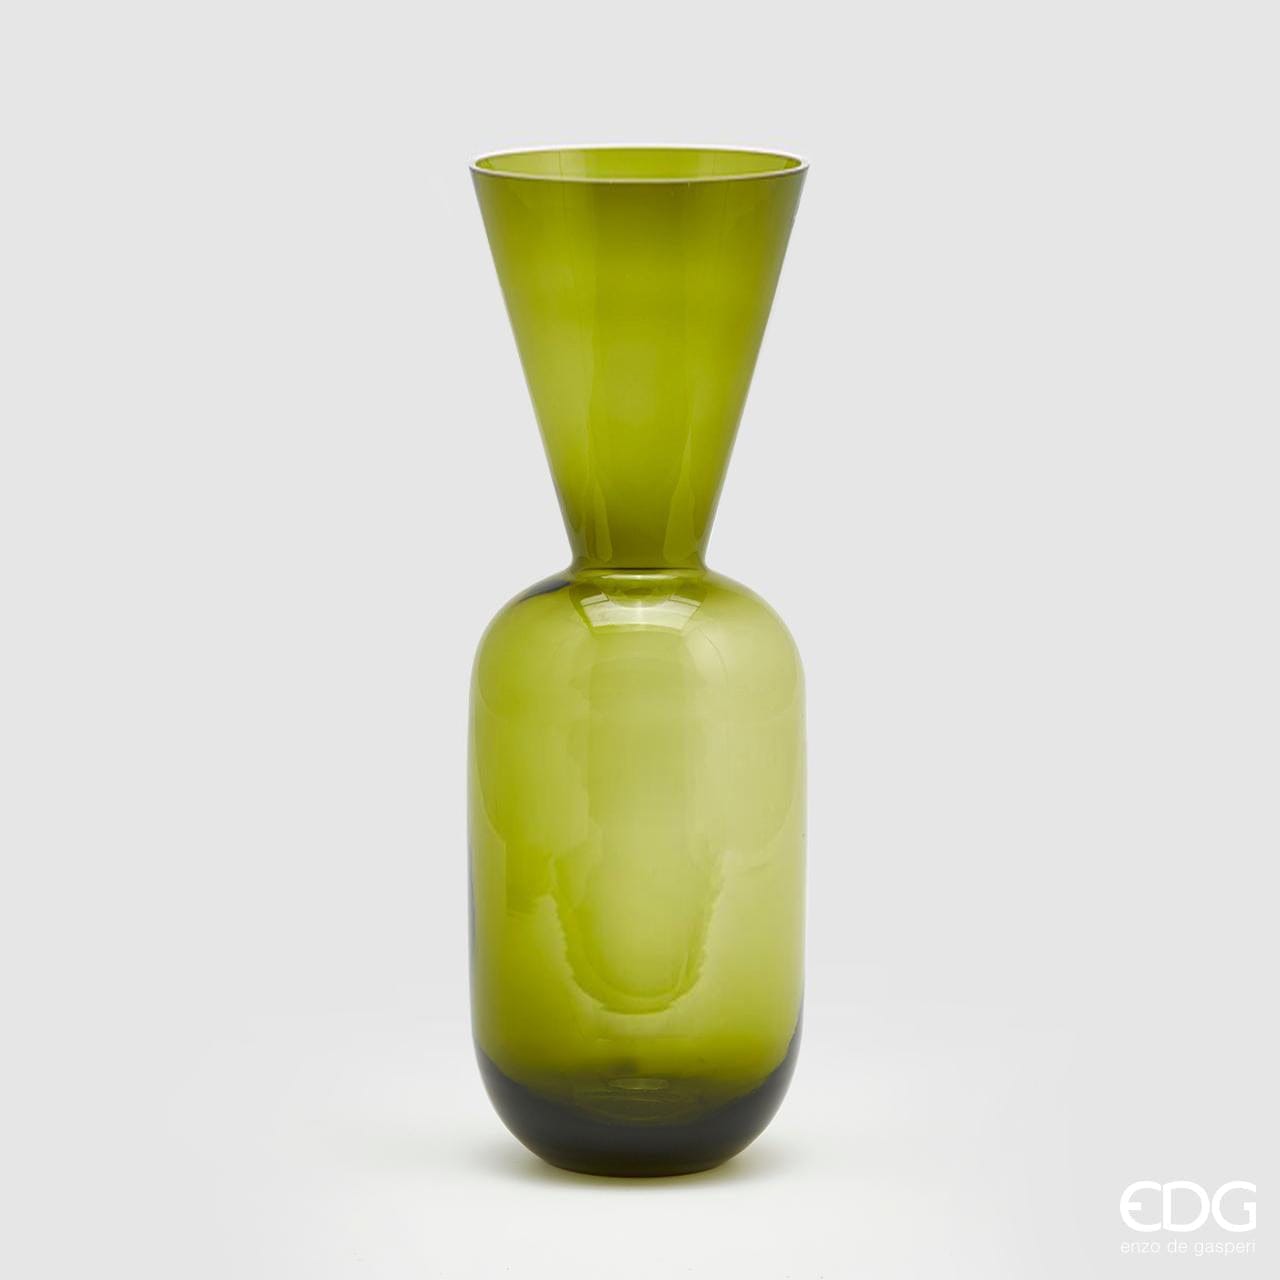 Italiving Glasvase Grün Designervase aus farbigem Glas Höhe 50 cm Ø 17 cm - 3 Farbvarianten